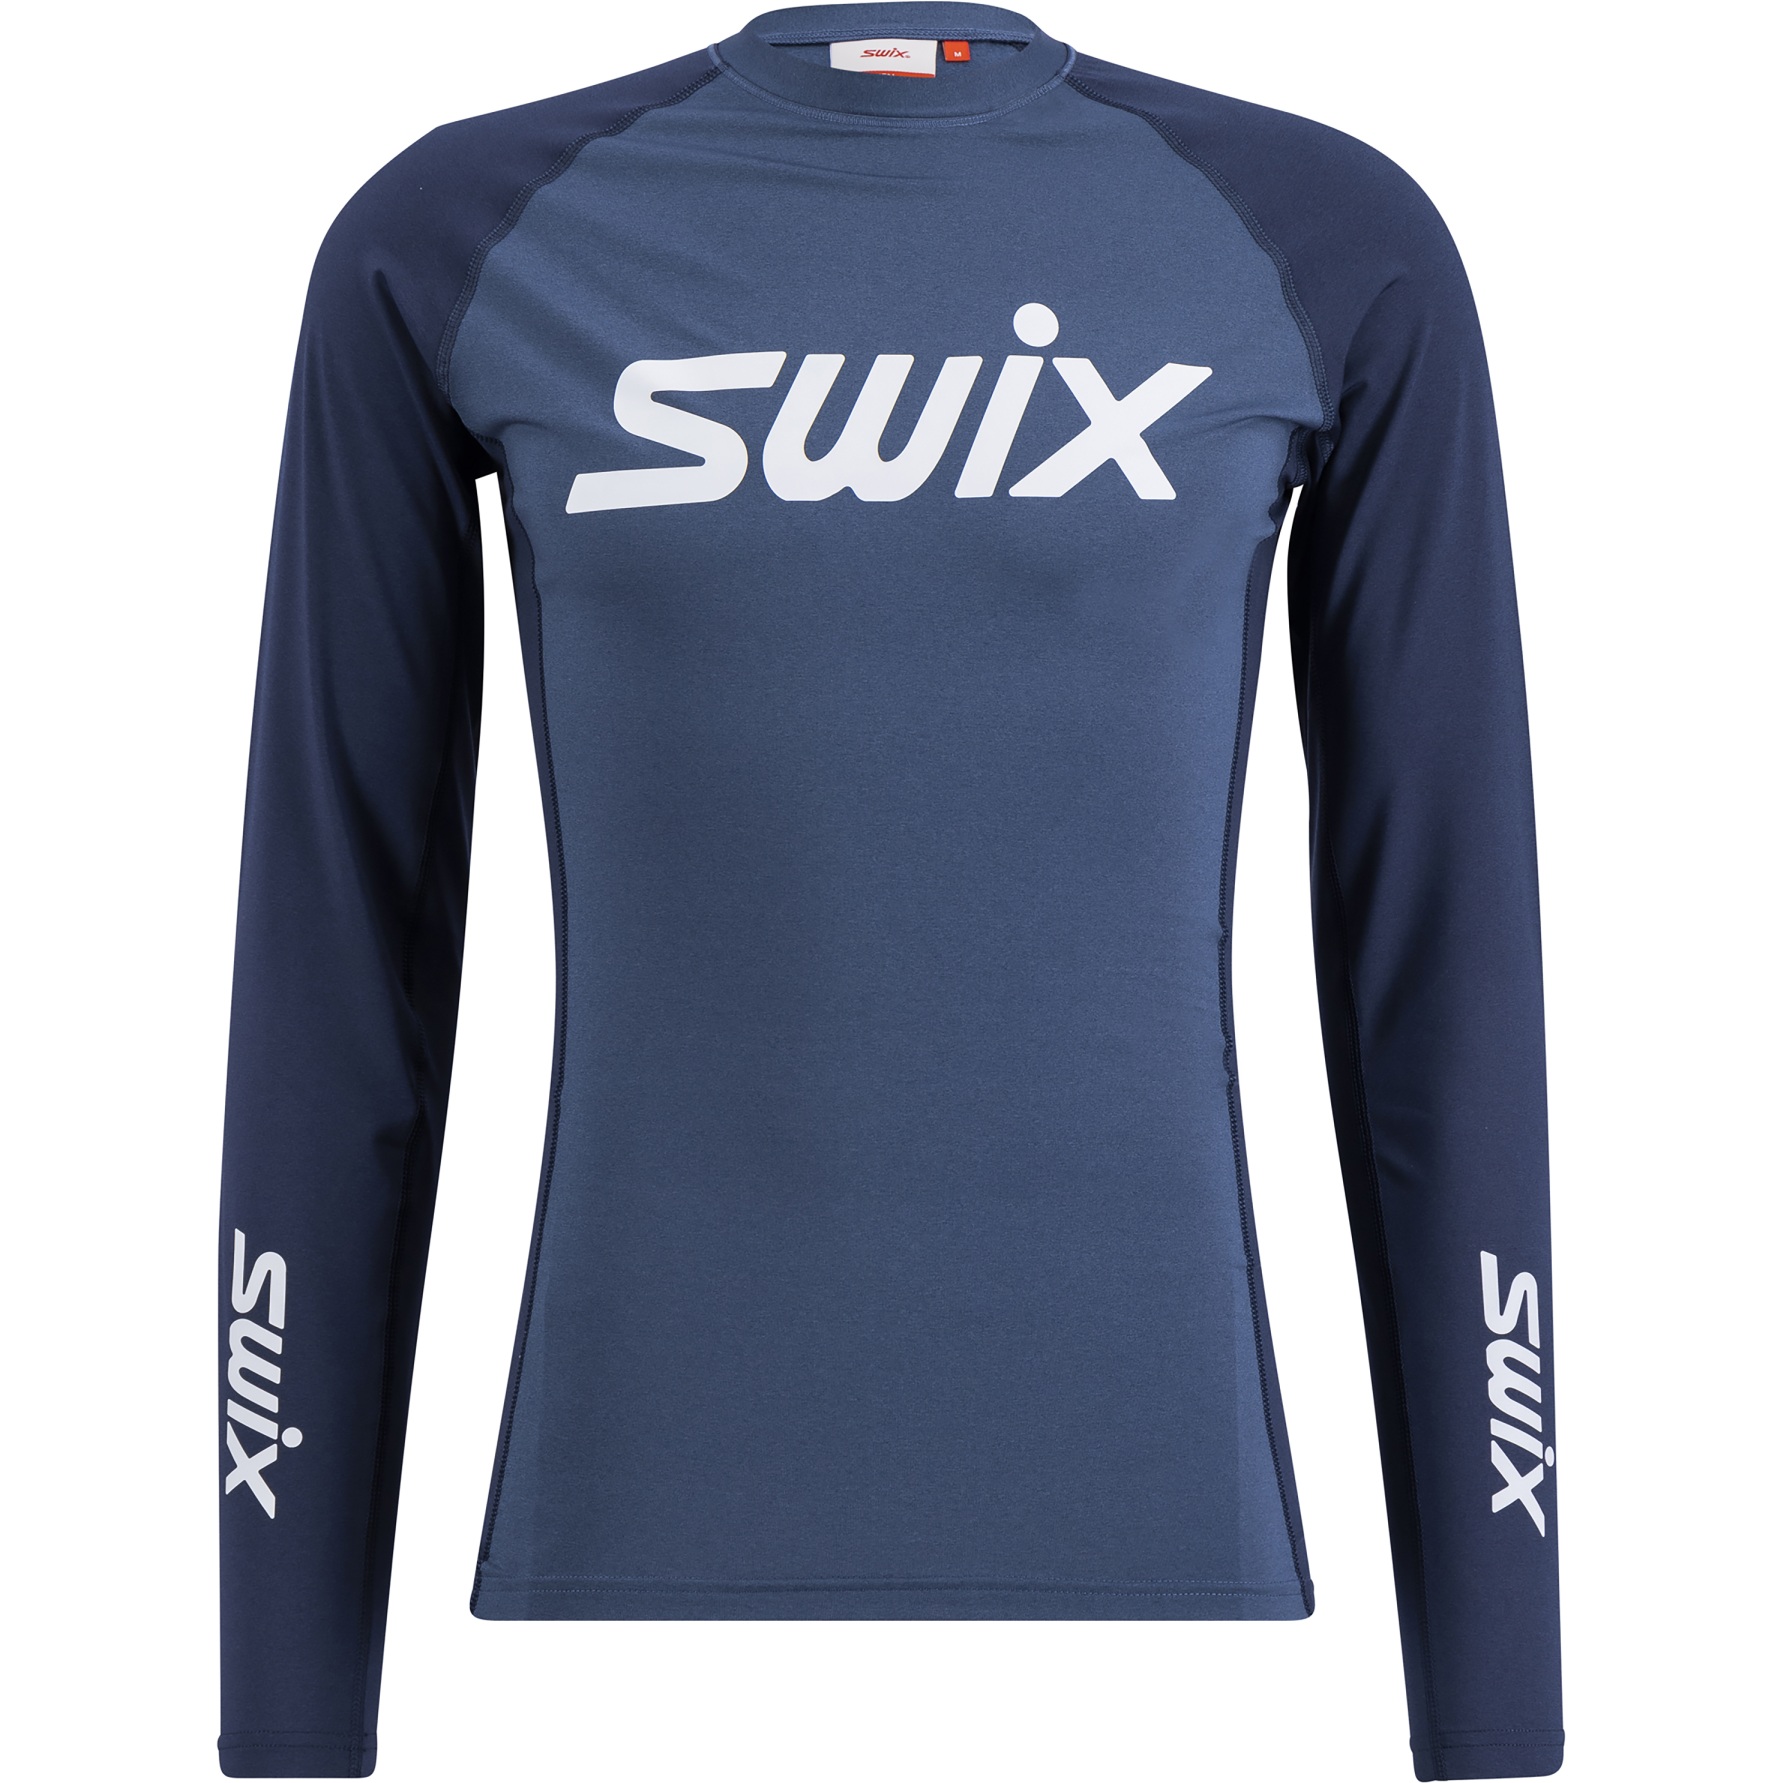 Produktbild von Swix RaceX Dry Langarmshirt Herren - Lake Blue/Dark Navy